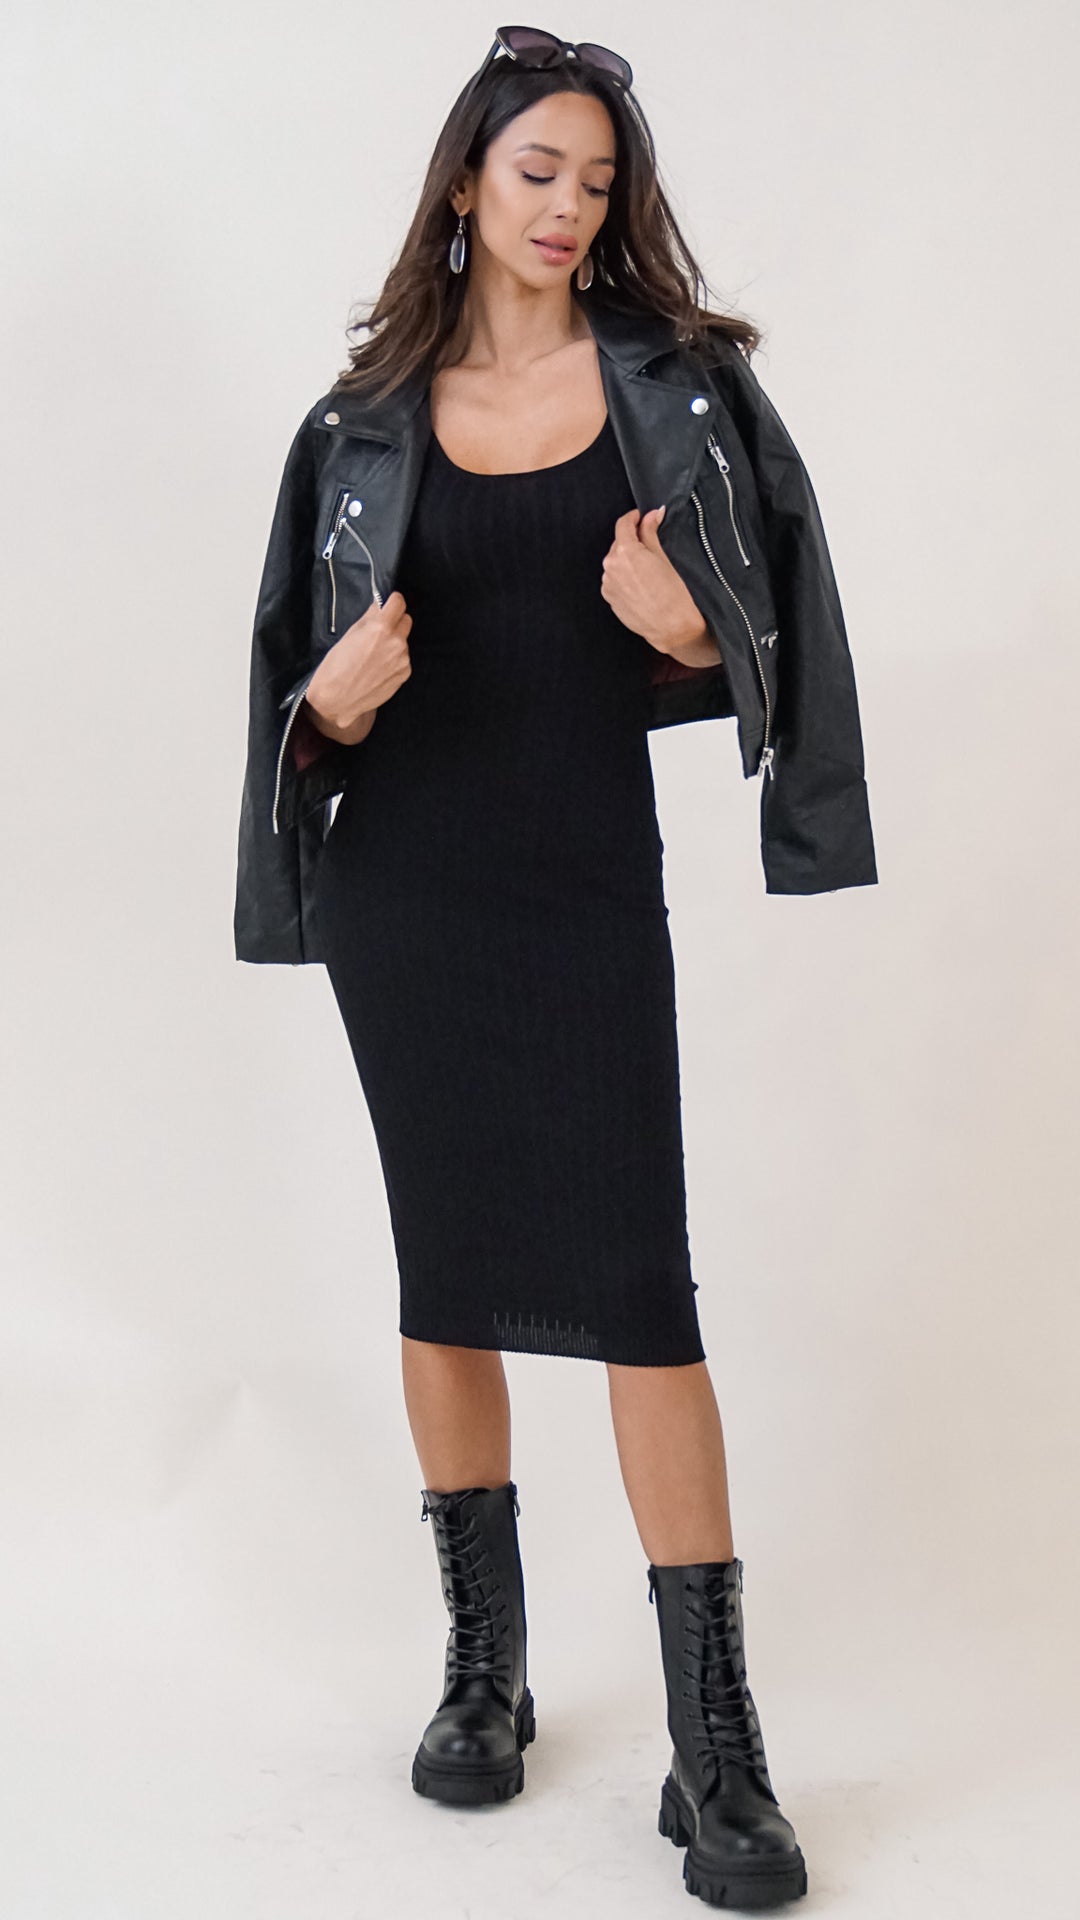 Belle Midi Bodycon Dress in Black - Steps New York